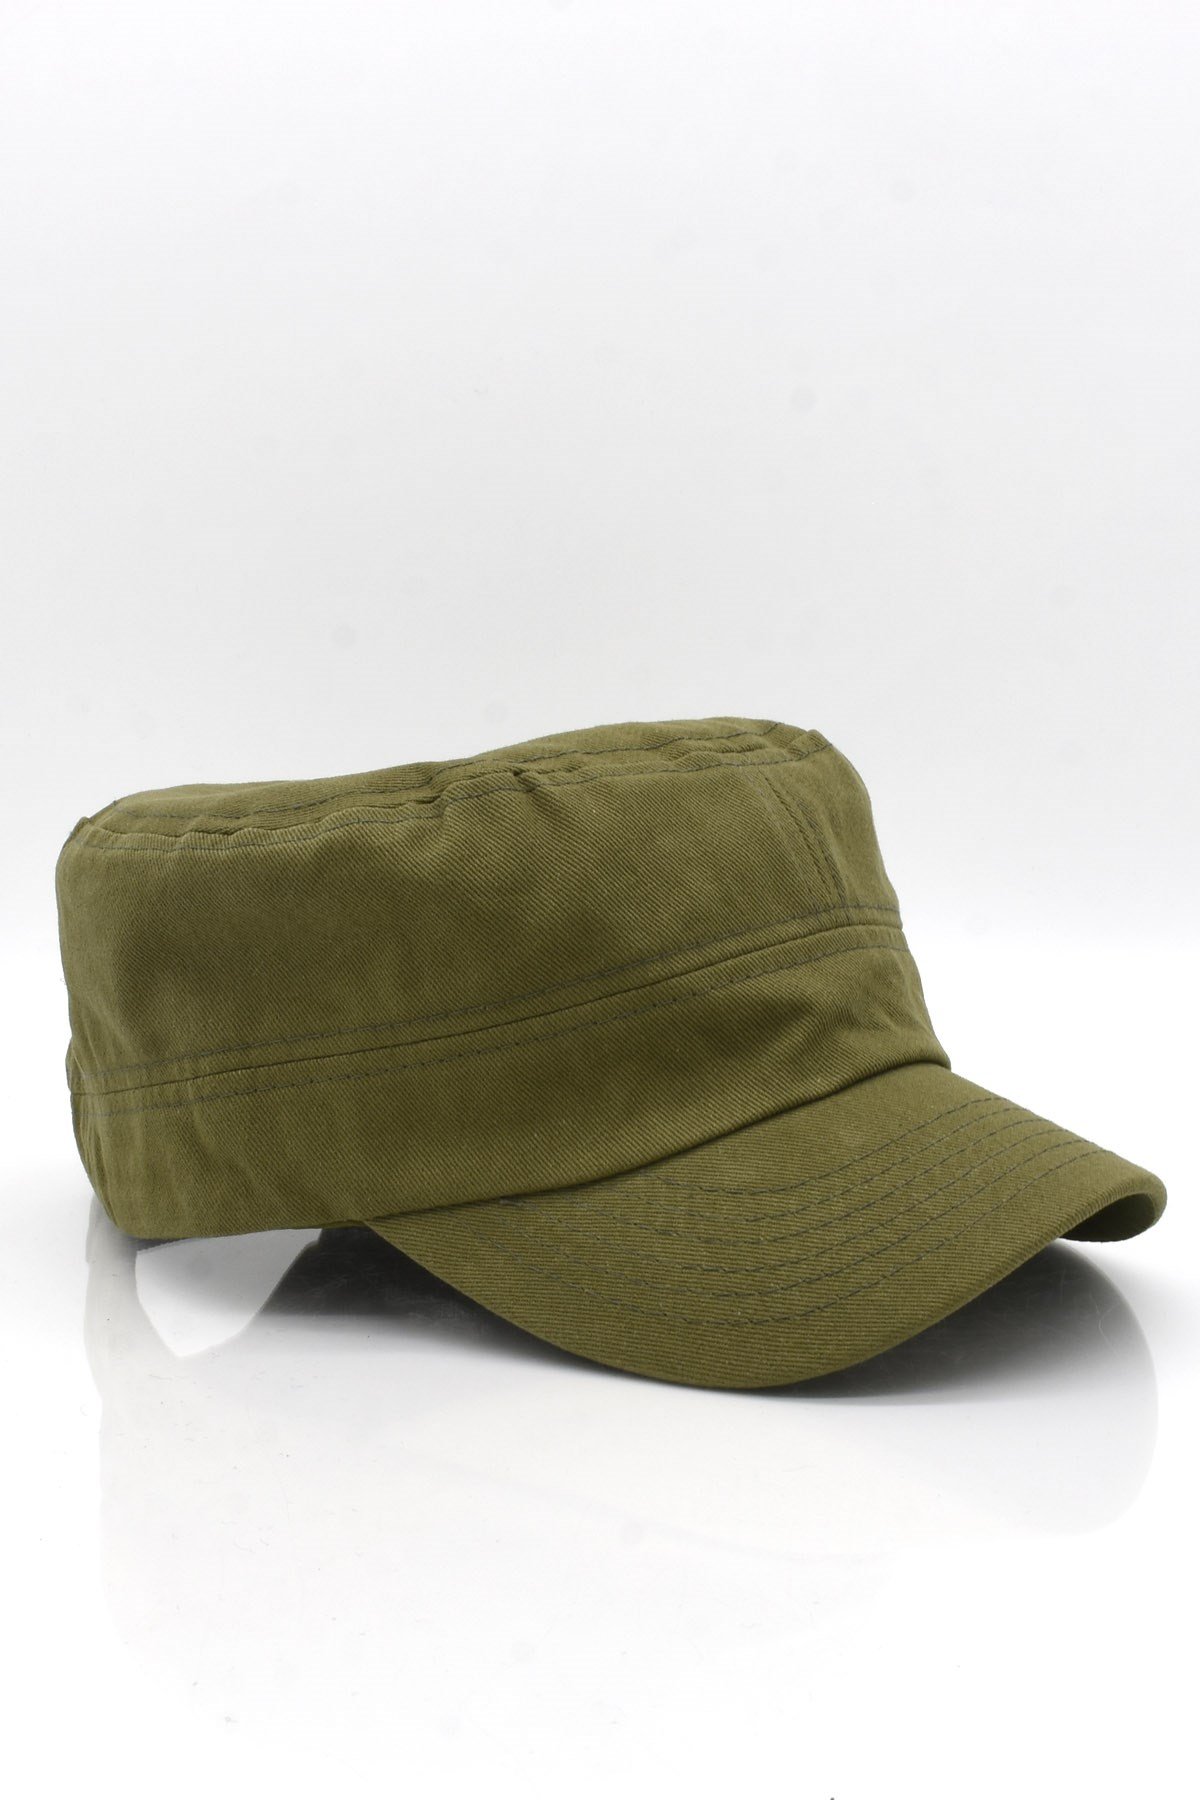 Külah Erkek Pamuklu Fidel Castro Şapka Yeşil Ayarlanabilir Outdoor Cap  KLH7145